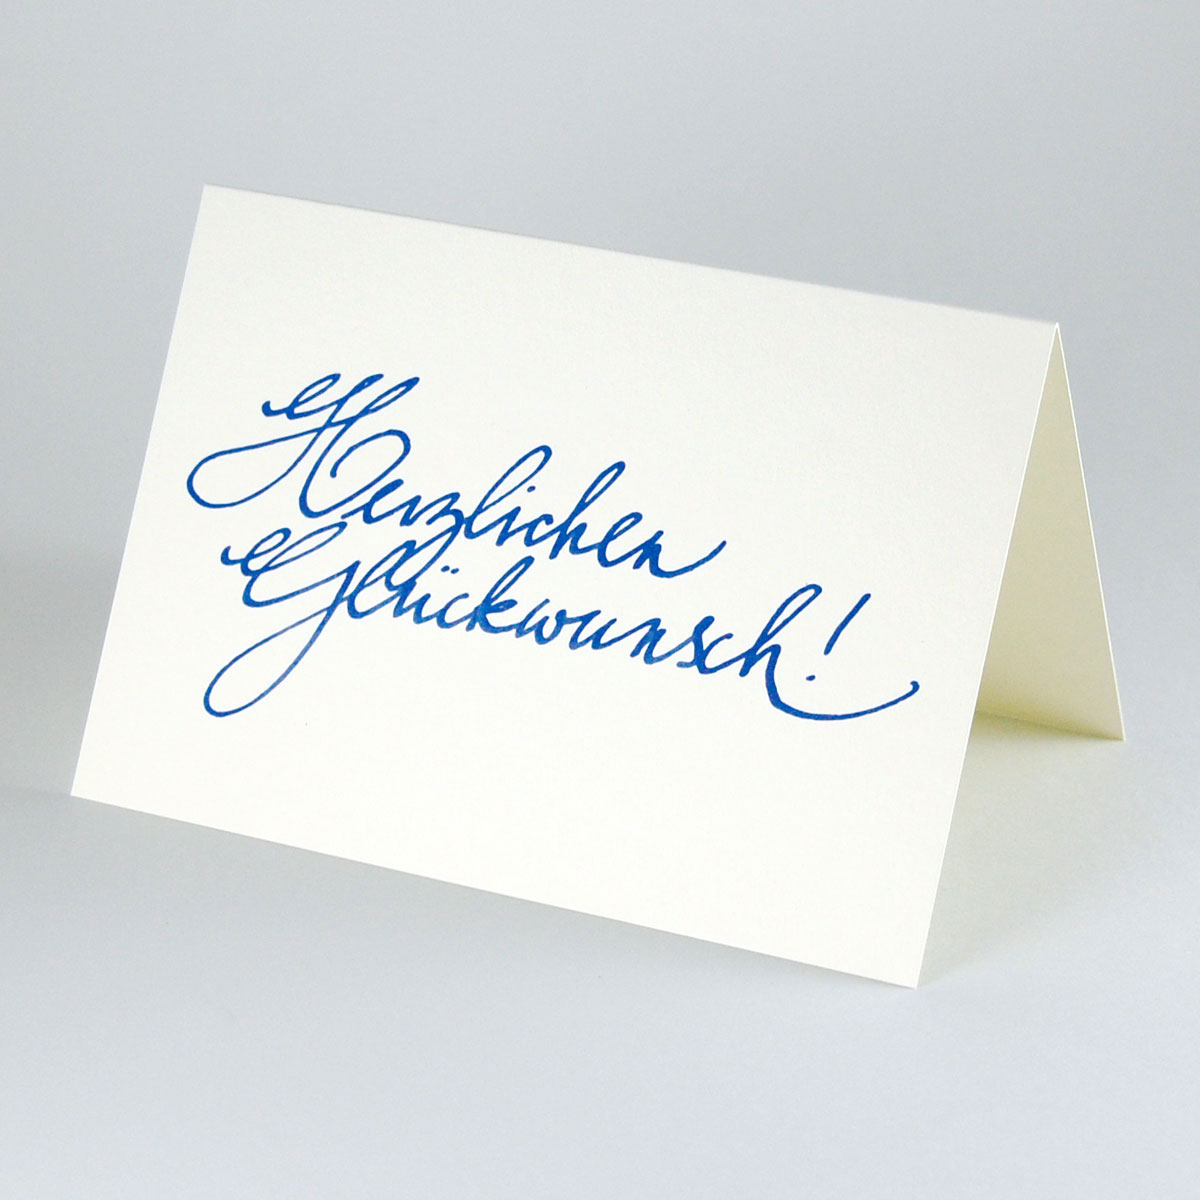 Herzlichen Glückwunsch! kalligrafierte Glückwünschkarten, blauer Druck auf cremeweißen, edlen Recyclingkarton